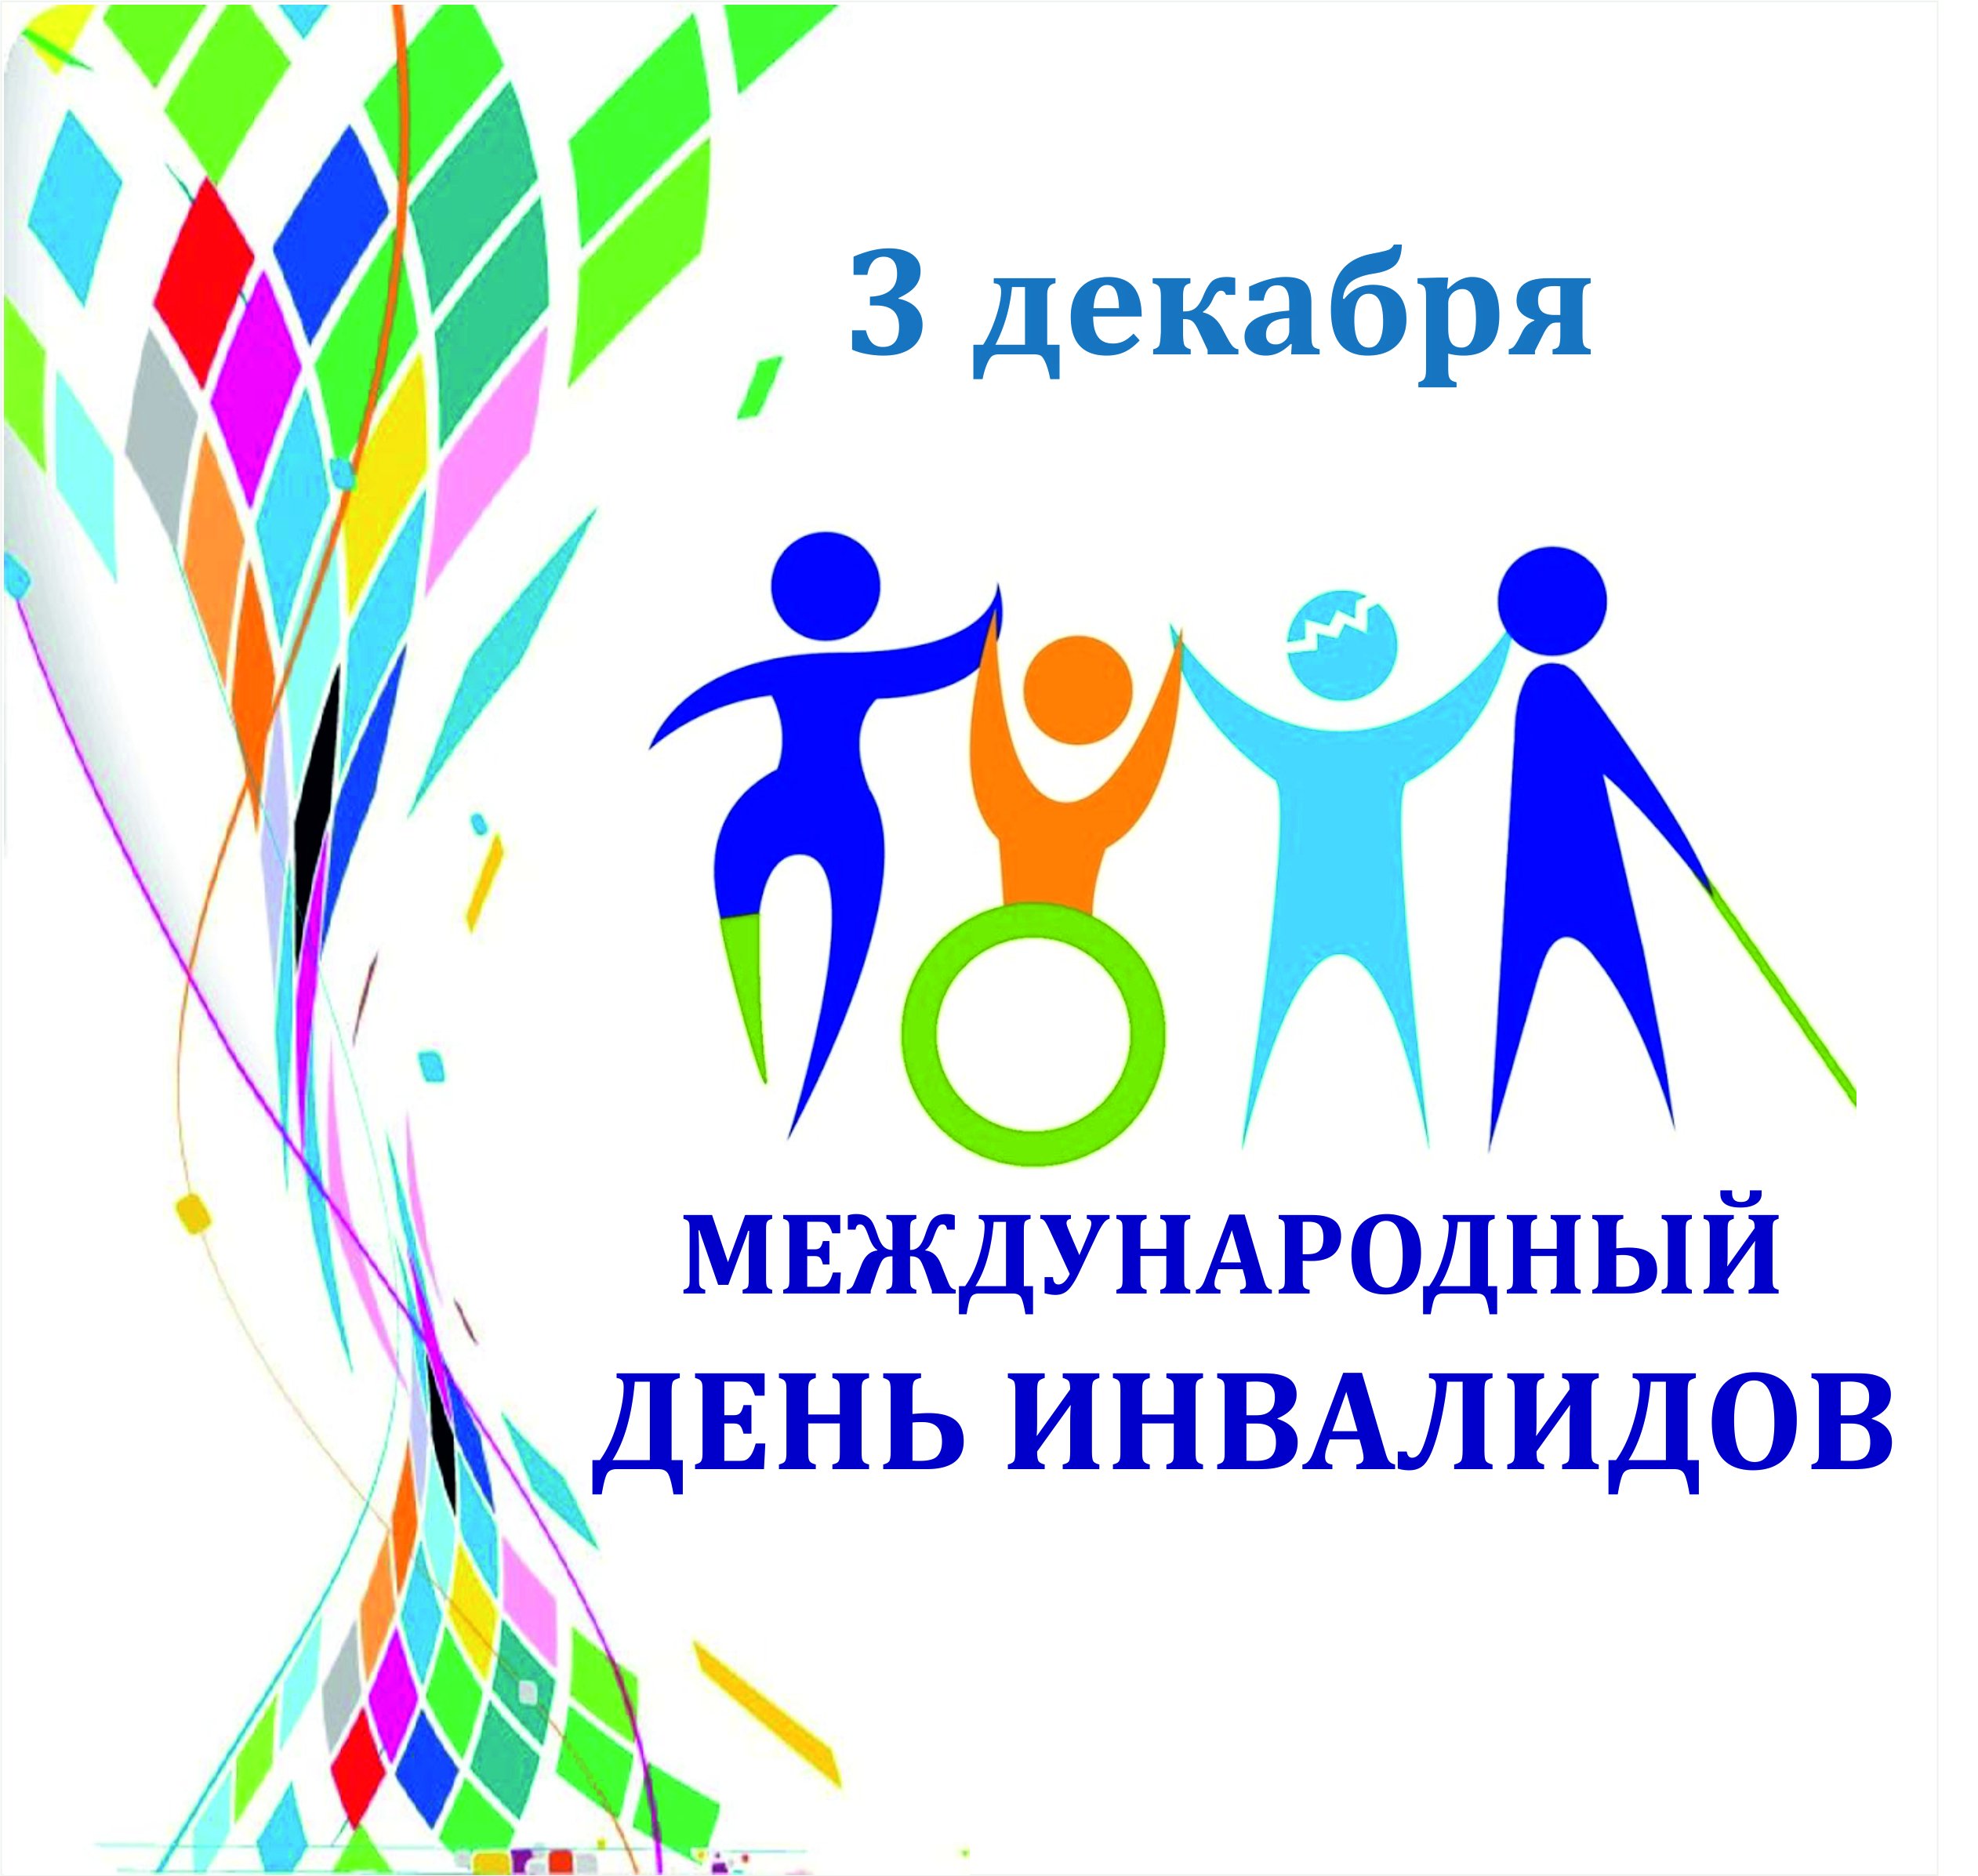 Акция к международному Дню инвалидов.